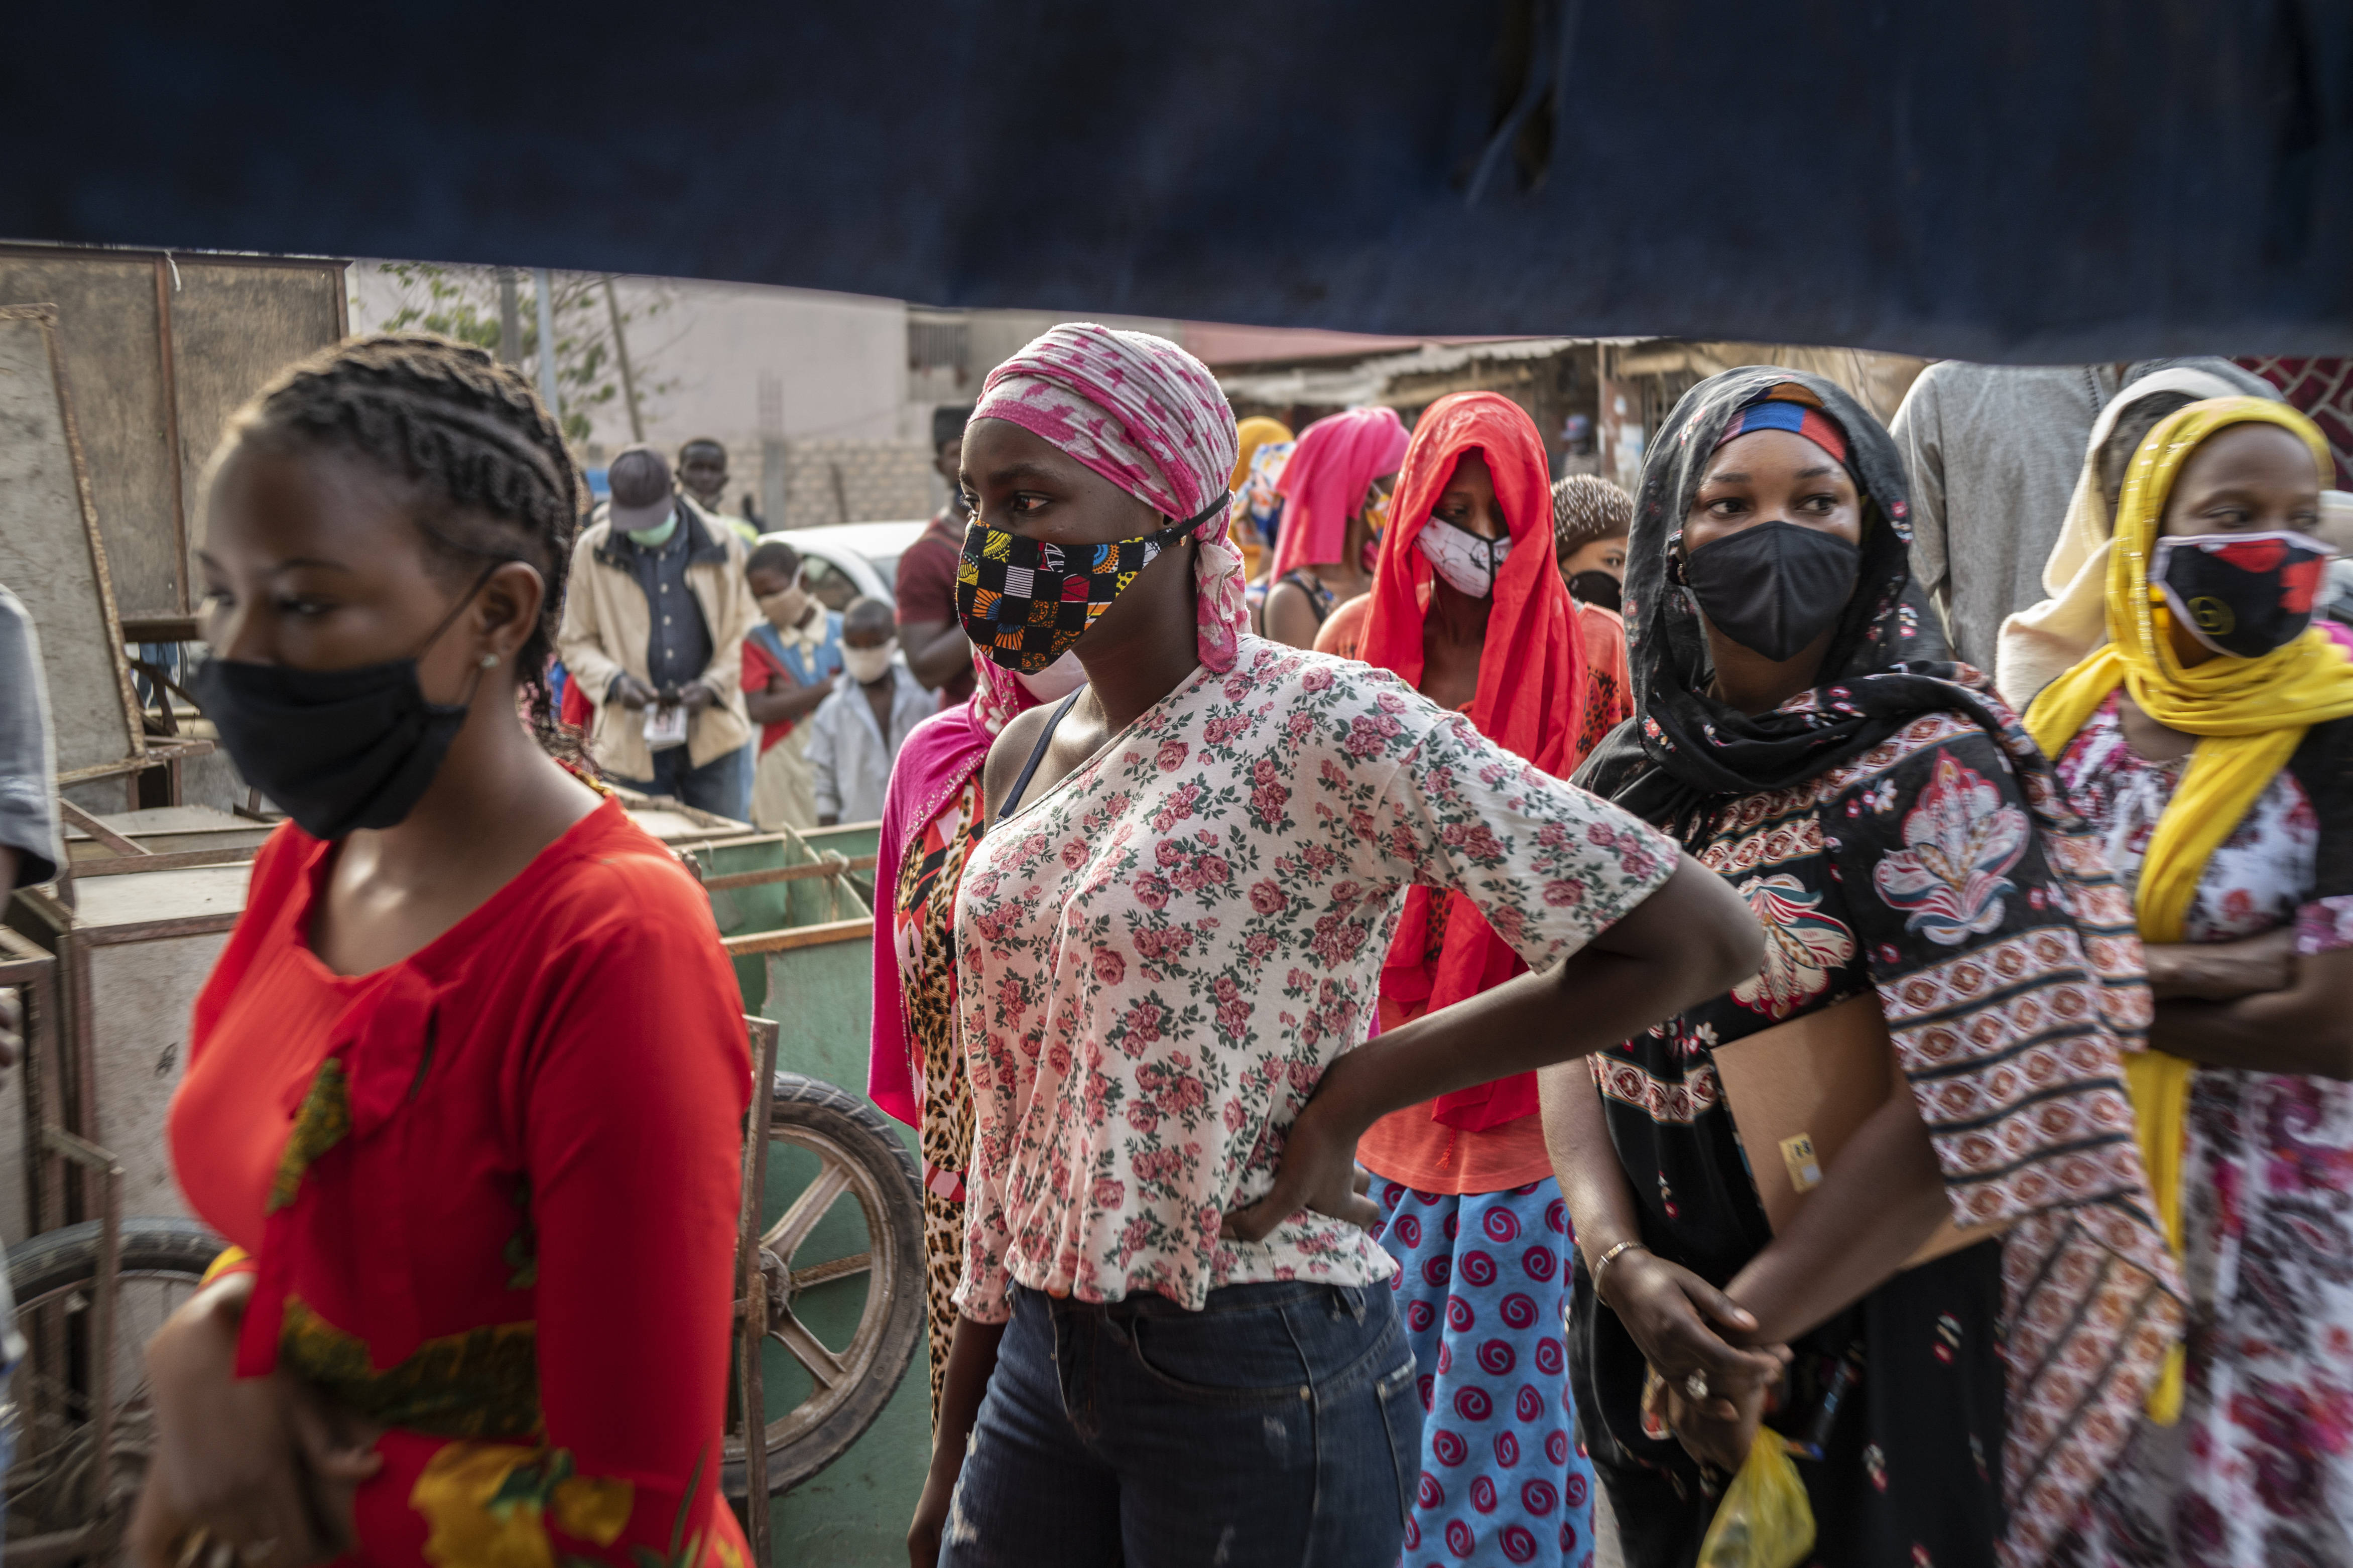 Des clientes portant des masques pour se protéger du coronavirus font la queue devant une boulangerie, à Dakar, le 25 avril 2020 (illustration).